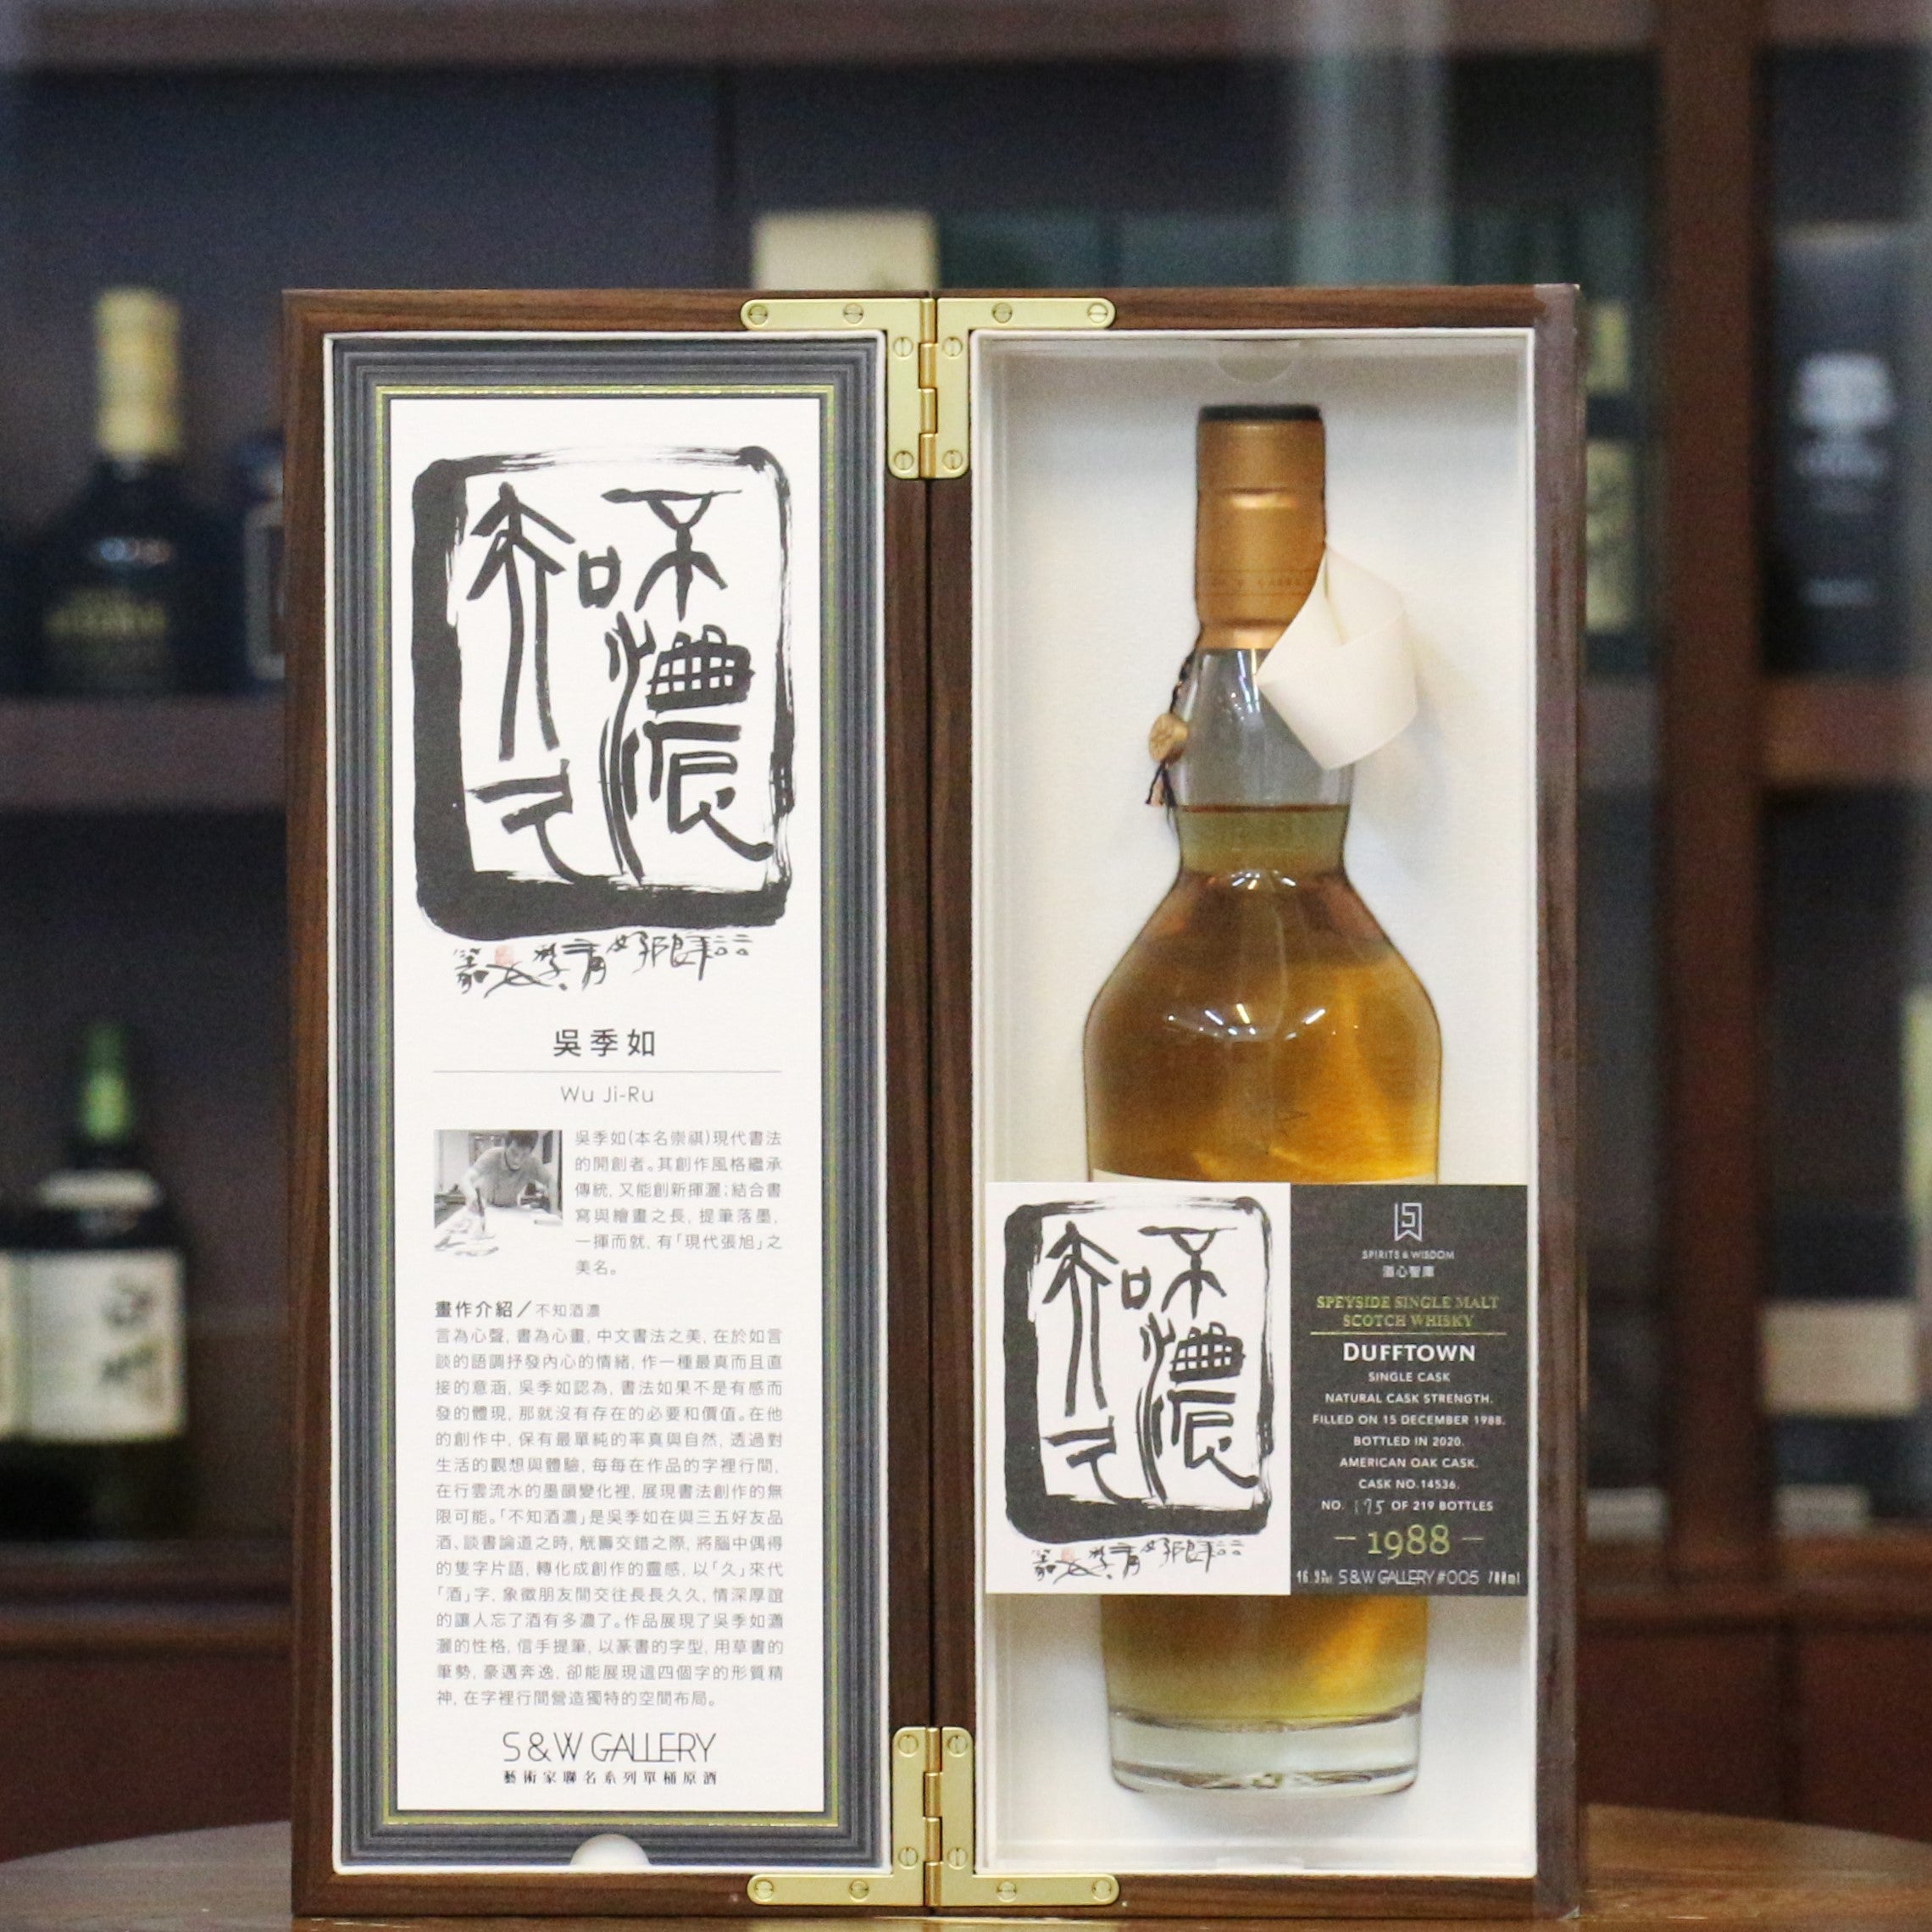 酒心智庫藝術家系列(S&W Gallery Collection)是台灣首創之限量藝術威士忌，全系列包含五款嚴選單桶威士忌原酒！全台史上最高年份之蘇格登(Singleton)1988年單桶原酒詮釋“時間”如何為威士忌創造風味之美。再結合國際級書法家吳季如老師之原創作品